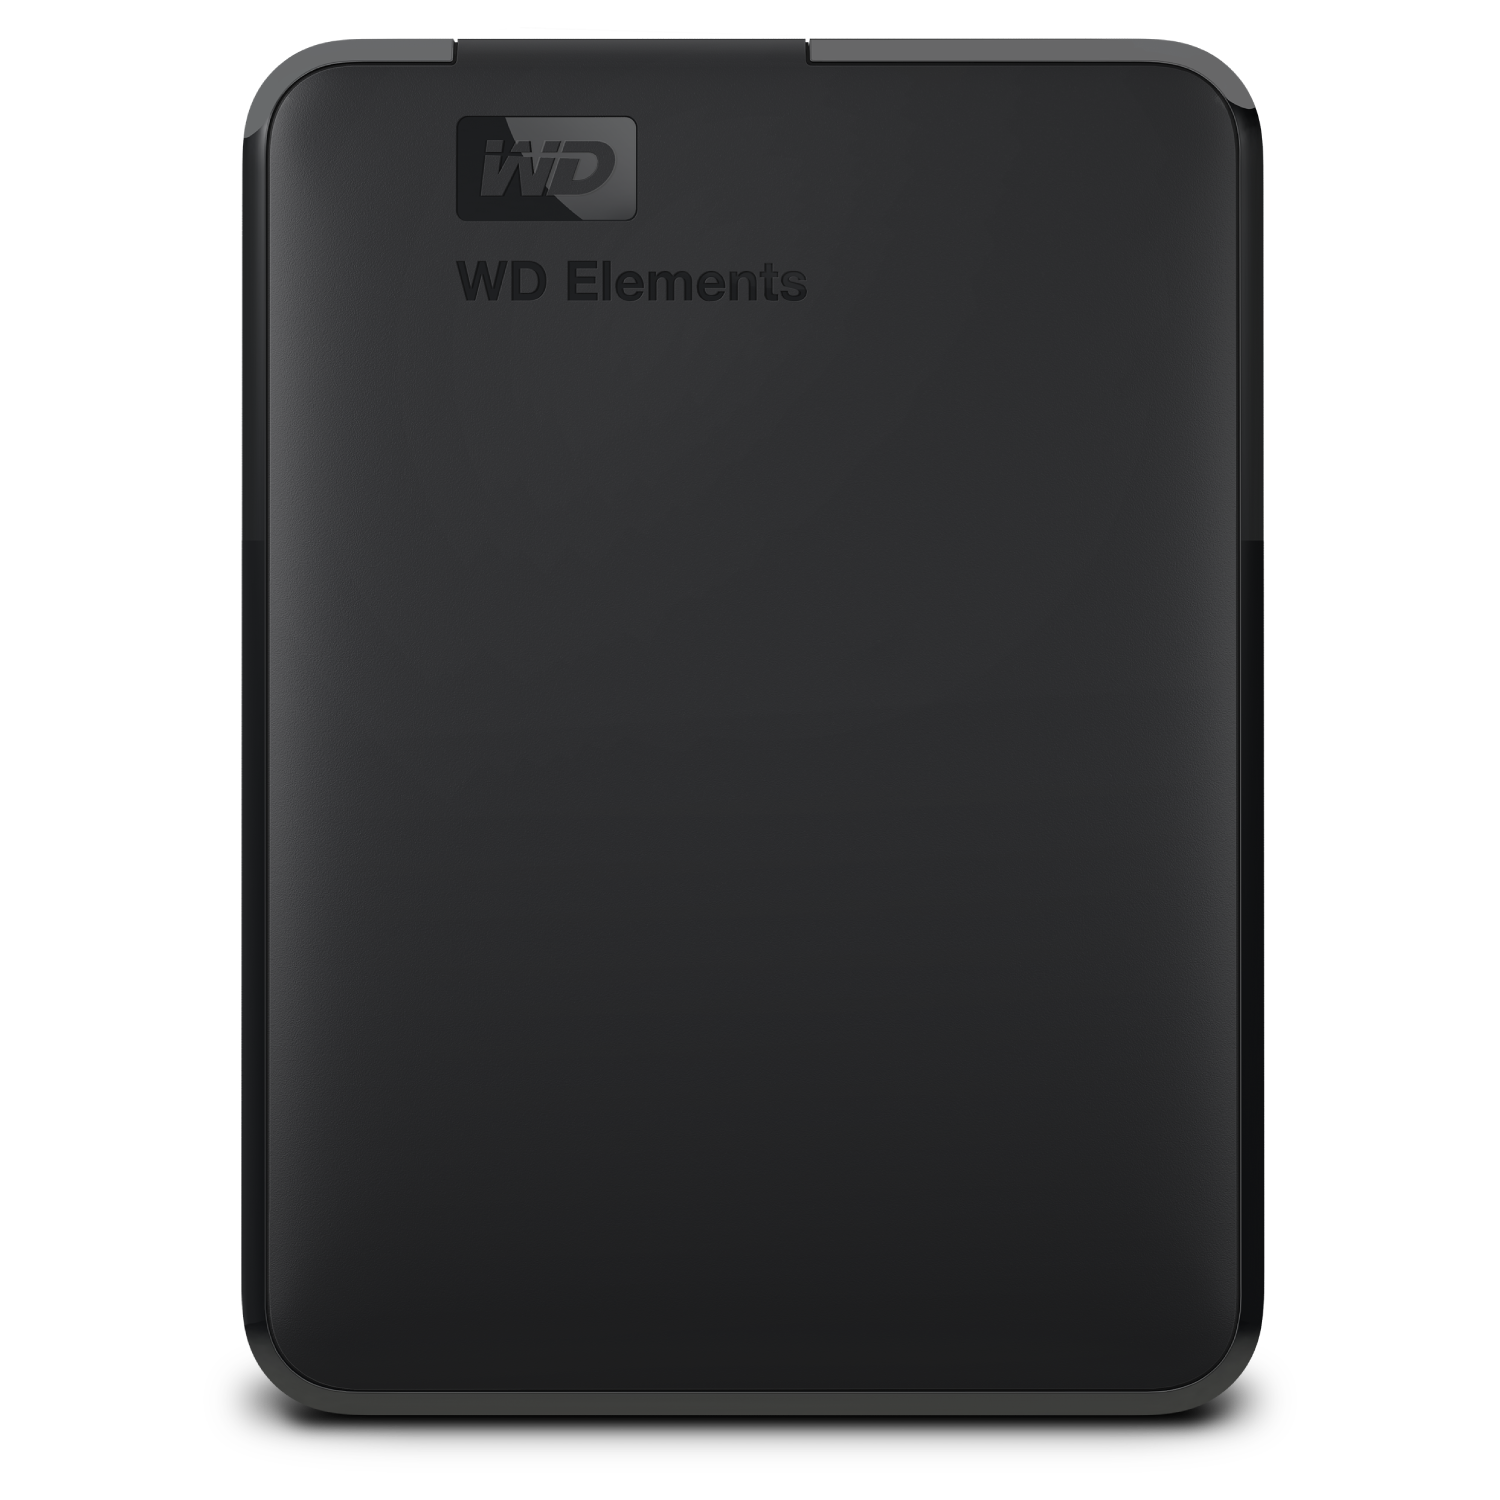 Disco Duro Externo 1.5 tb wd elements usb 3.0 2.5 con formato ntfs para windows negro de 15 color western digital portable 1500gb 1.5tb 2017